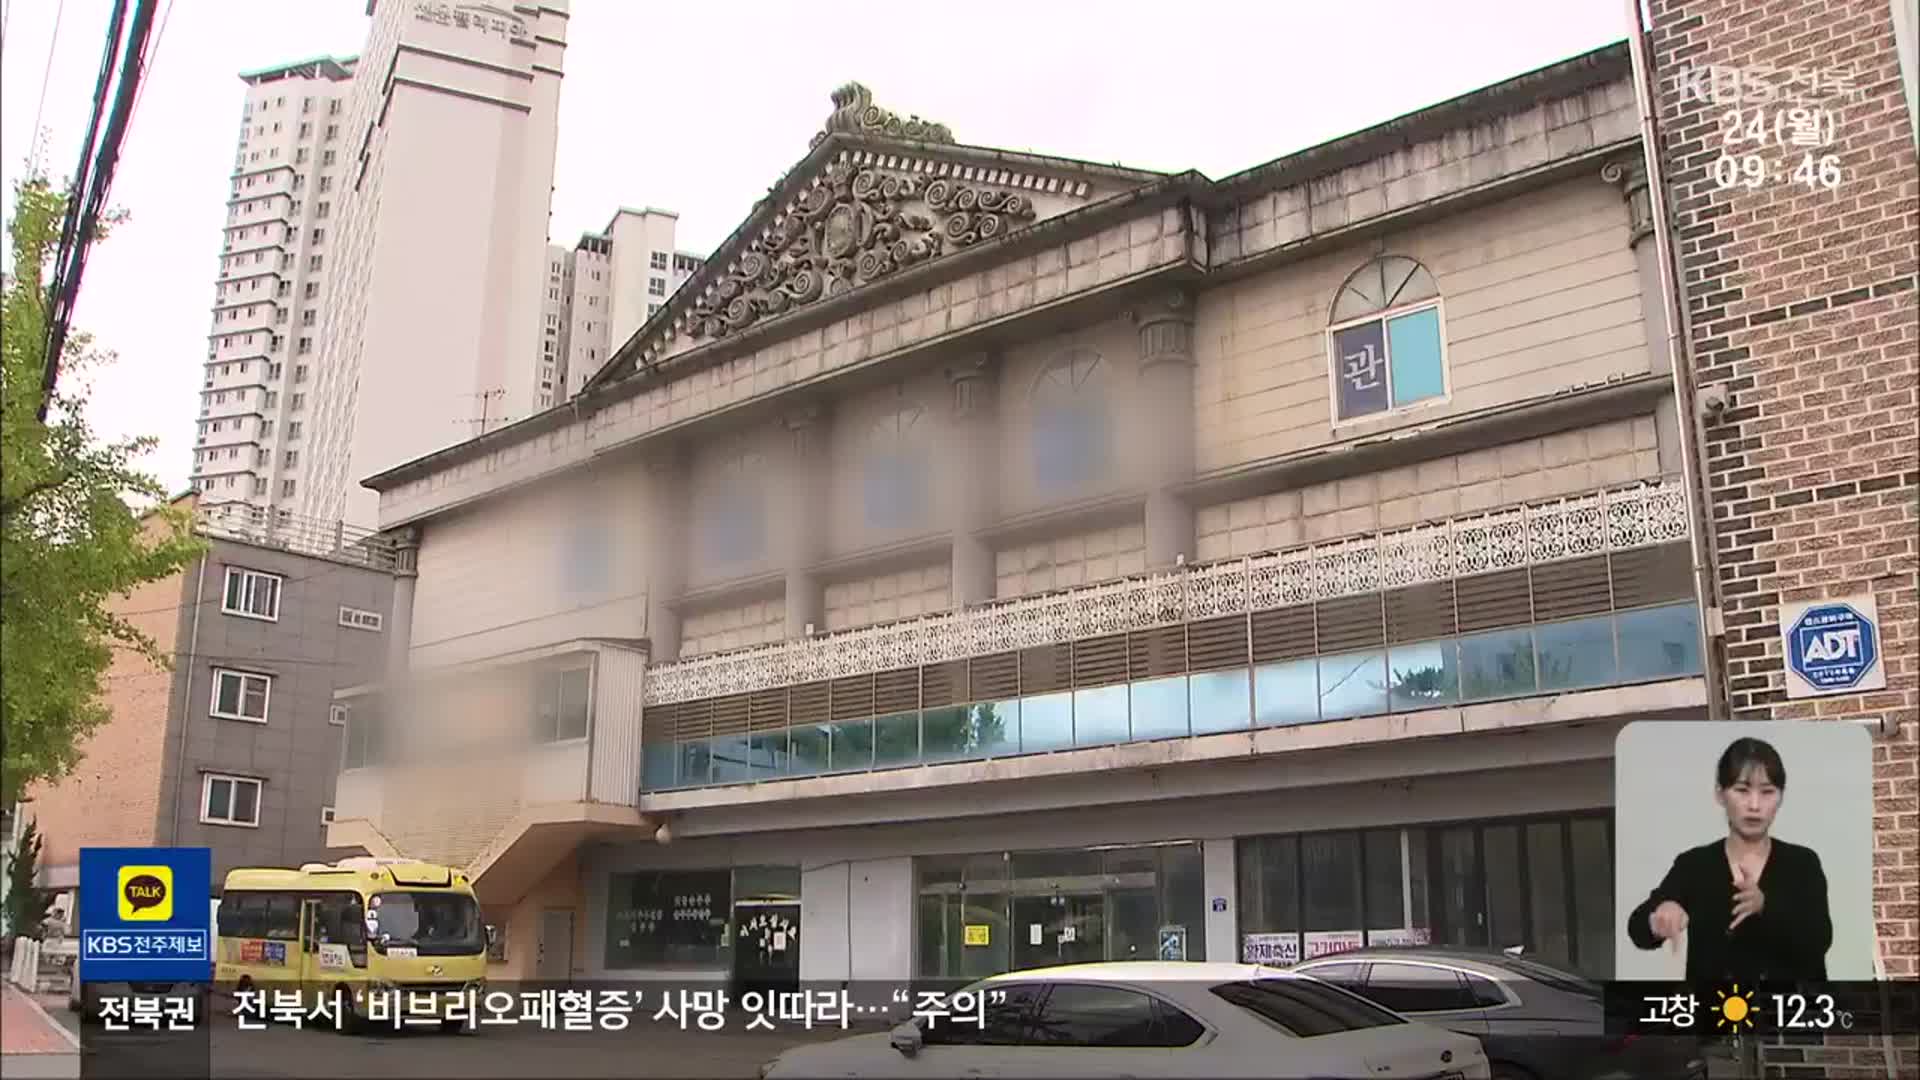 전북, 민선 7기 추진 사업, 뒤집기가 능사?